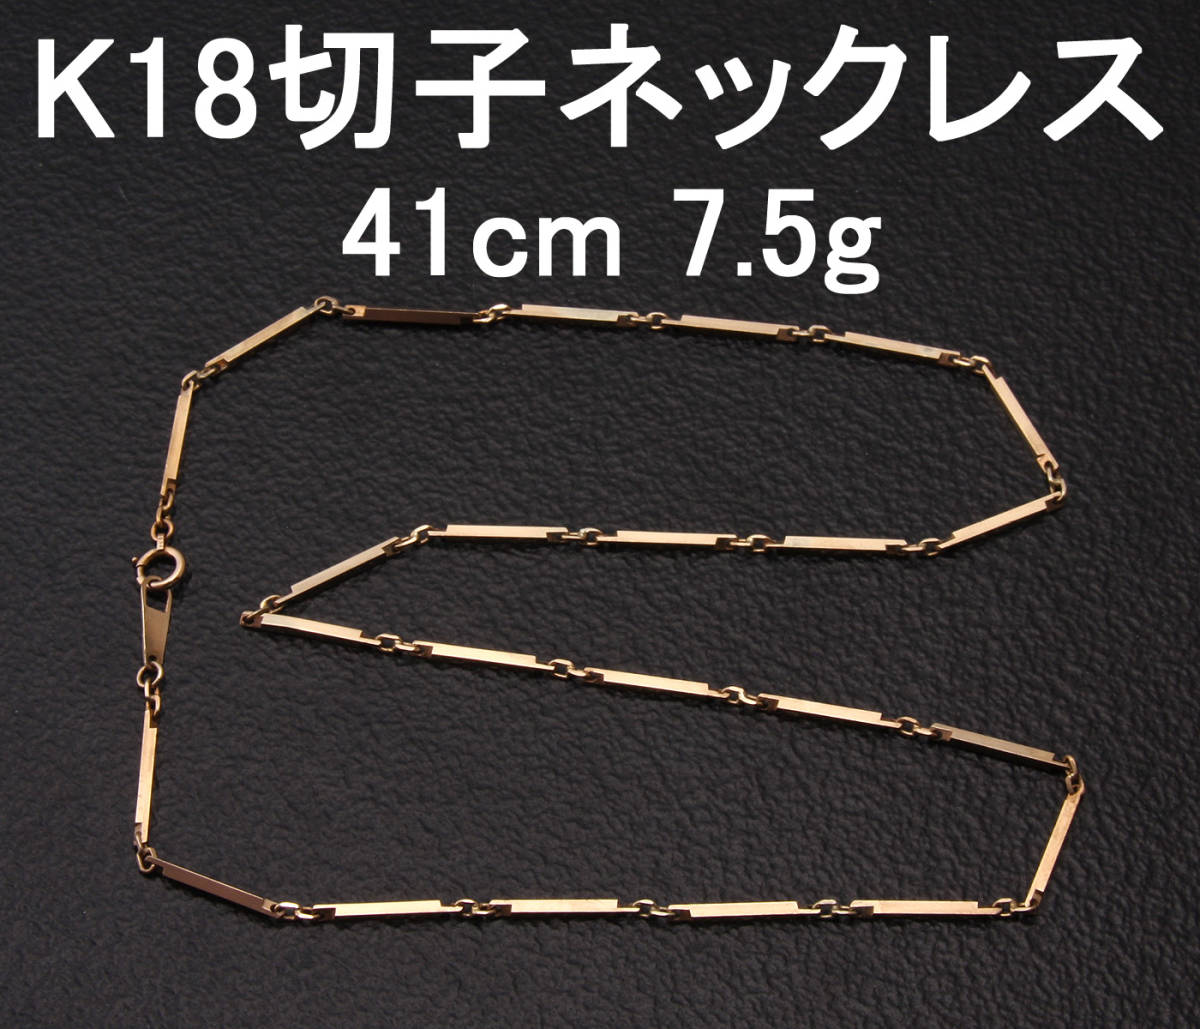 ◆質◆K18製ネックレス 切子デザインチェーン イエローゴールド 7.5g/41cm◆OJ-0591